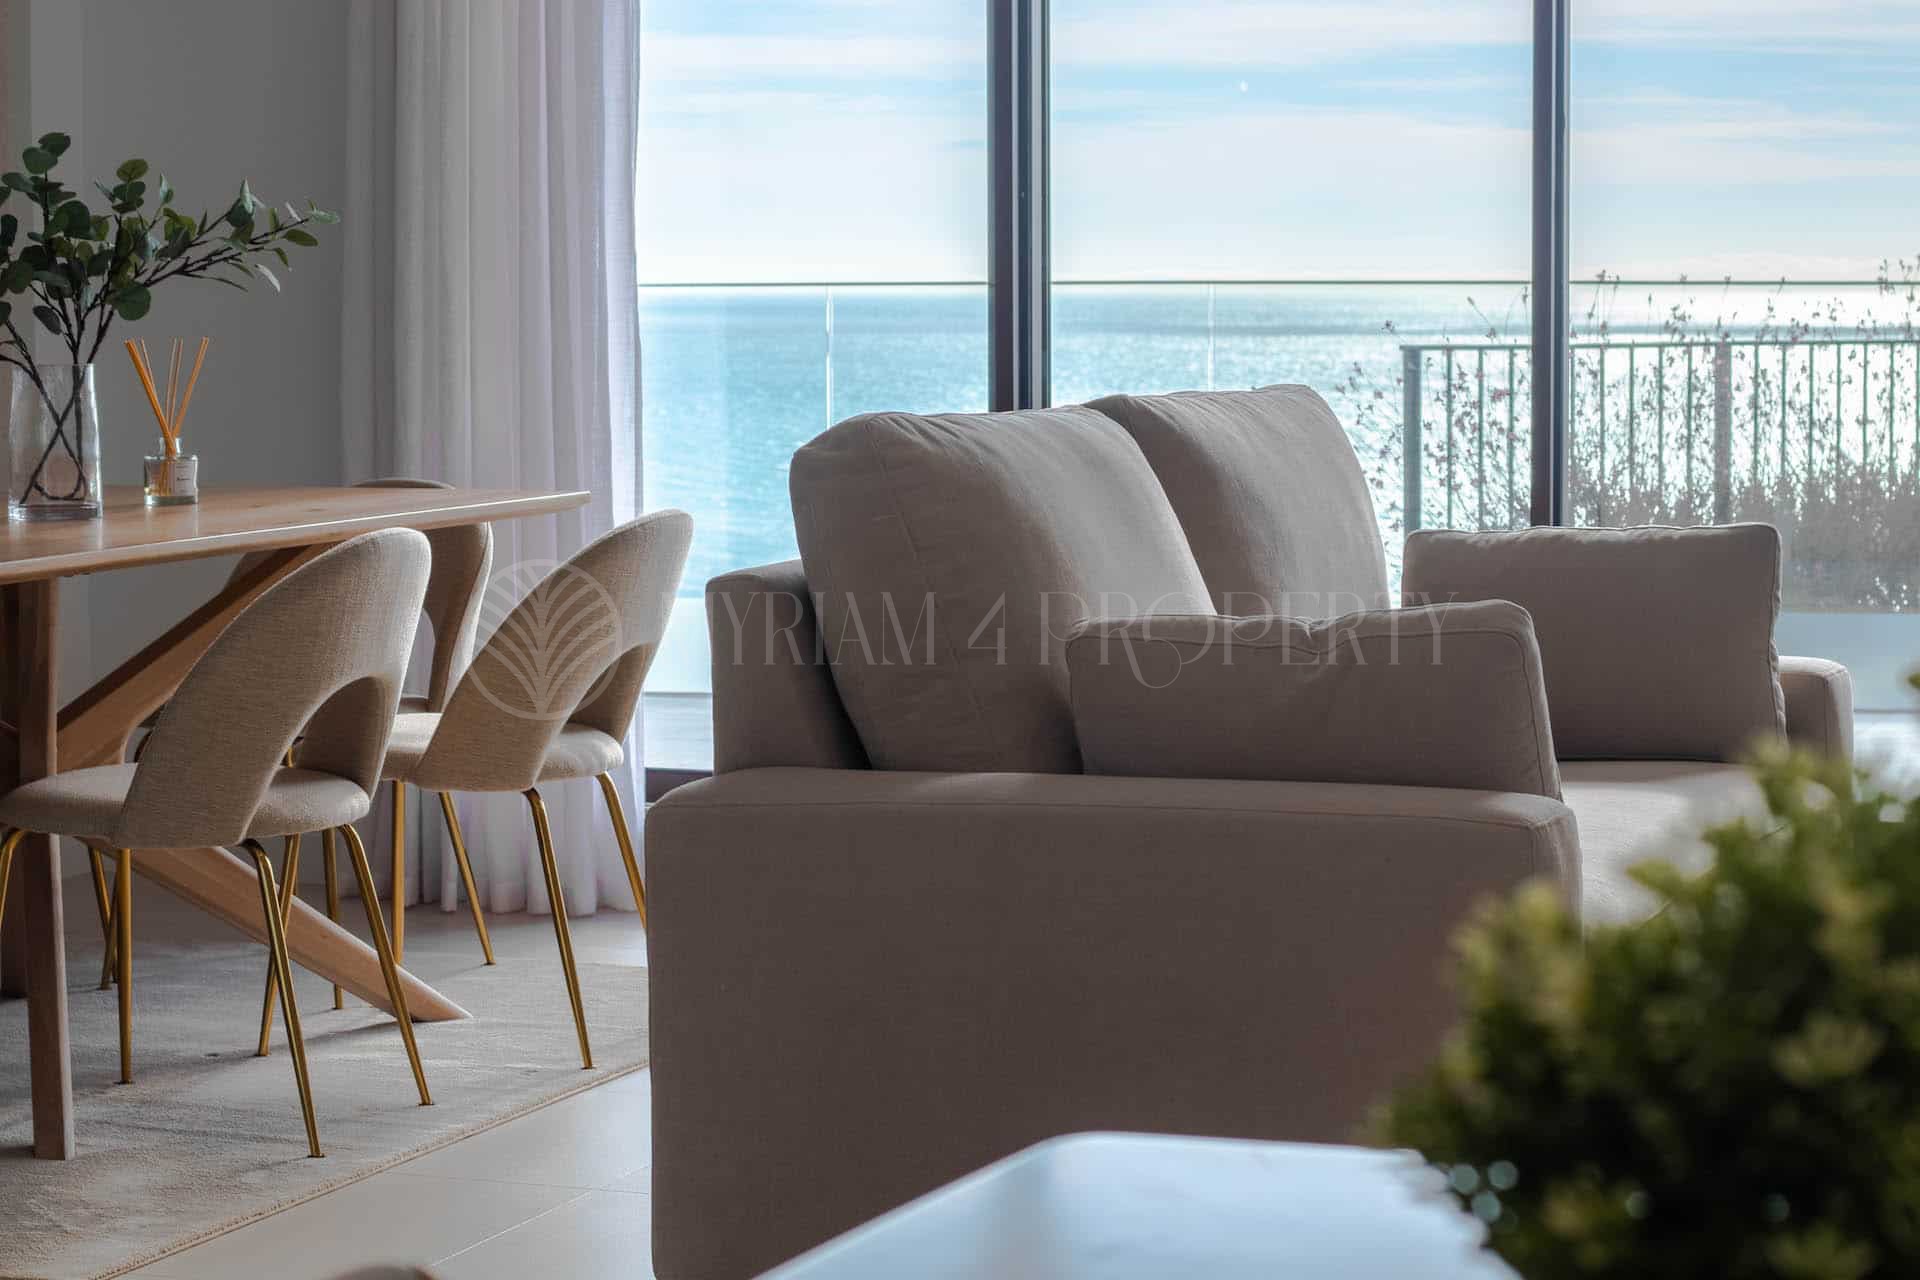 Exclusive new apartments with impressive sea views in Rincón de la Victoria – Málaga